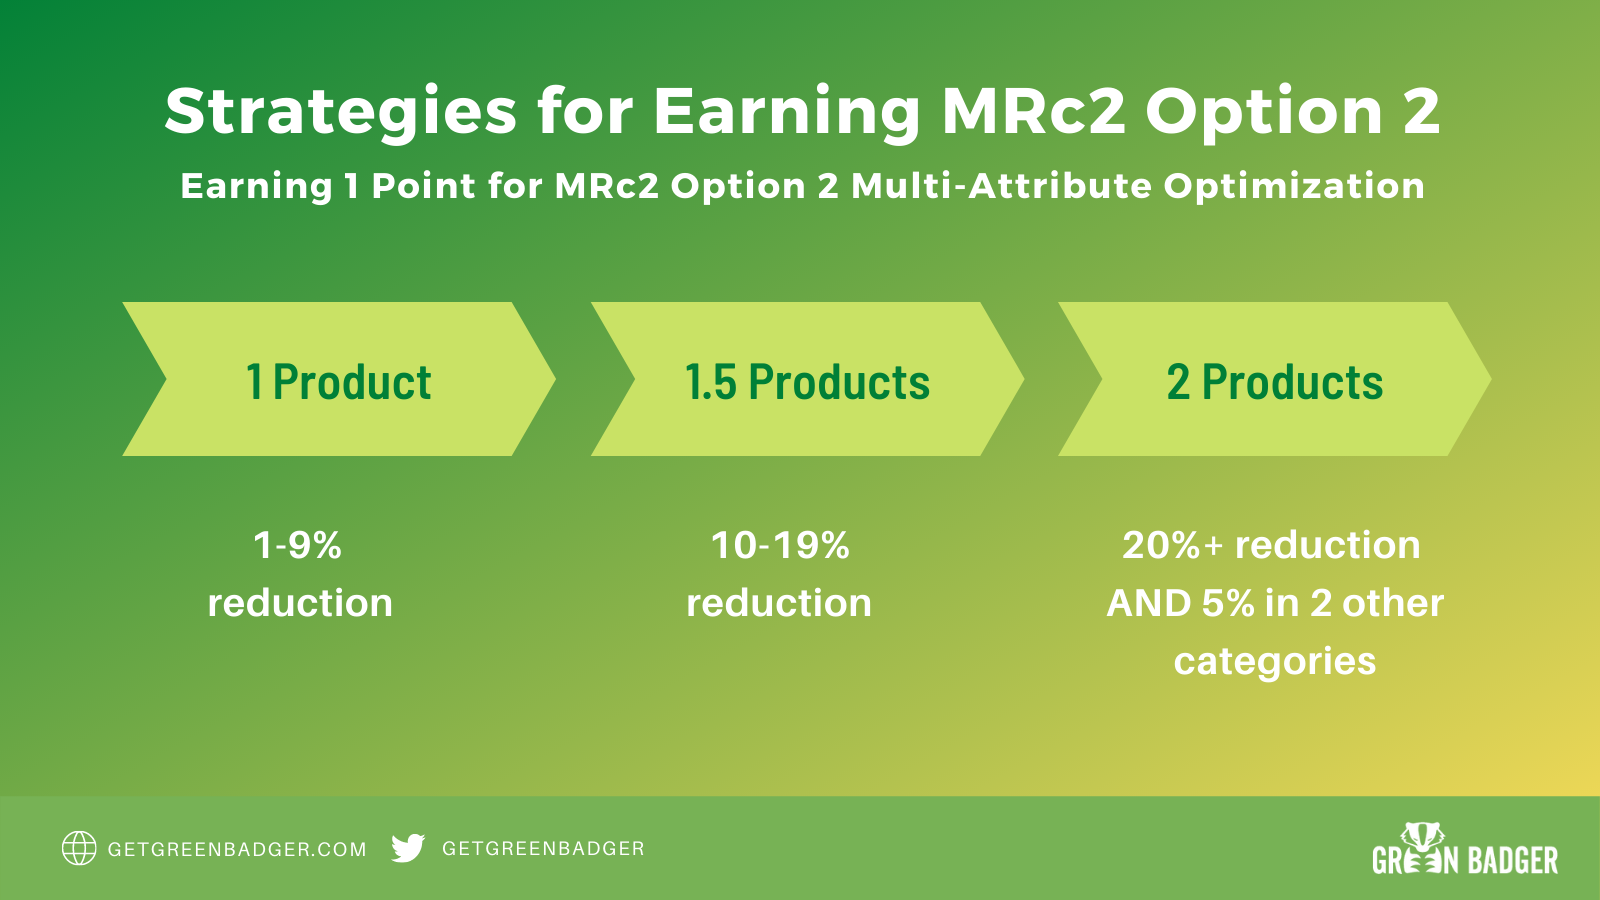 Strategies for Earning MRc2 Option 2